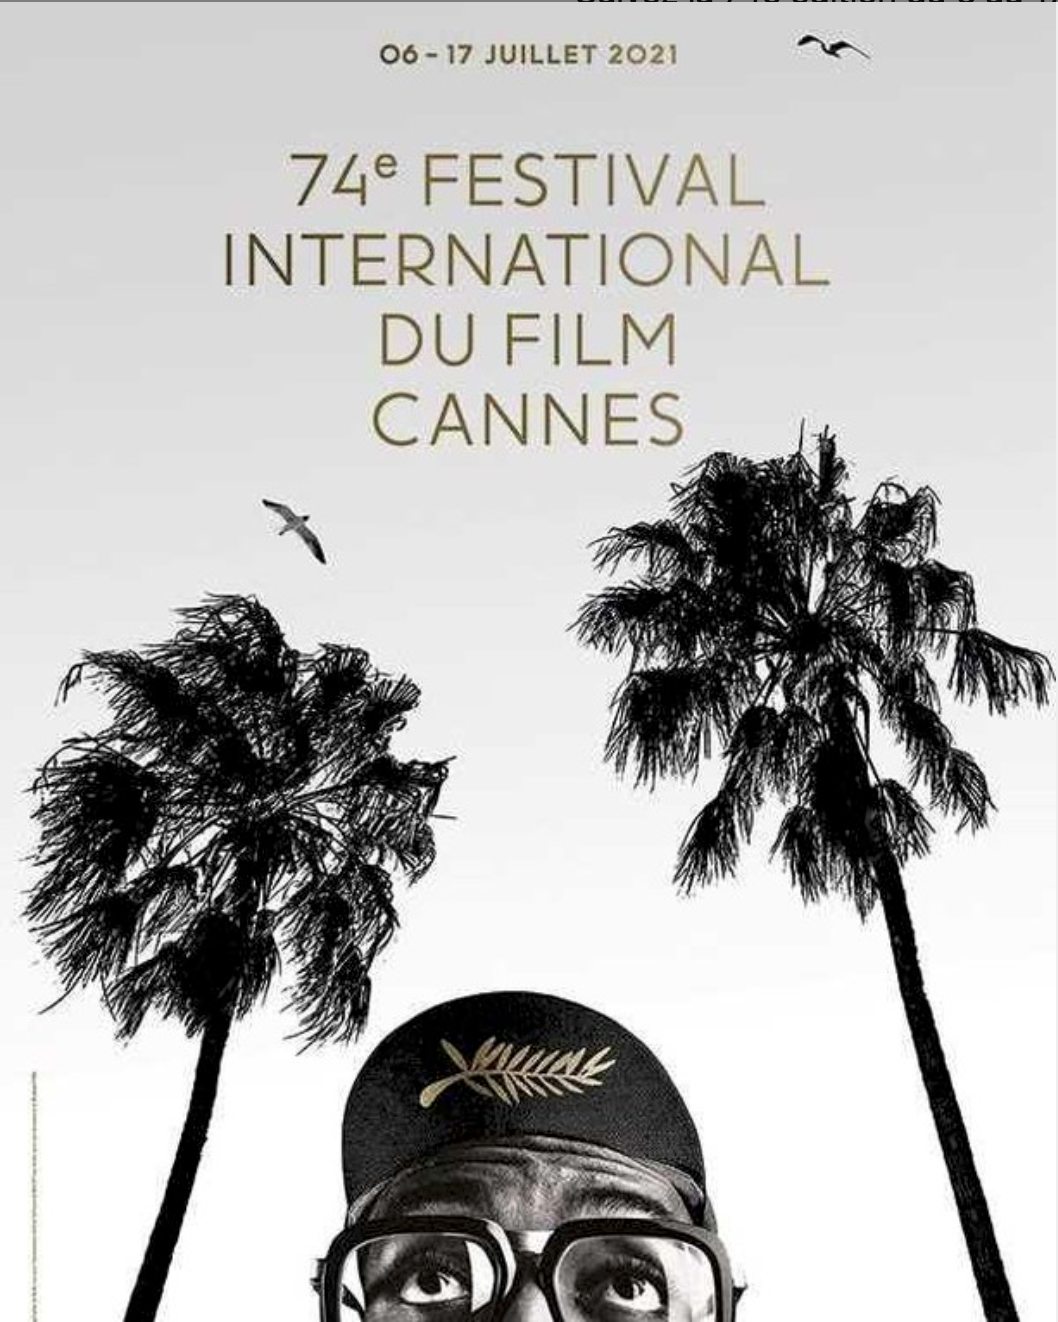 Quelle star figure sur l'affiche du 74e Festival de Cannes ? 